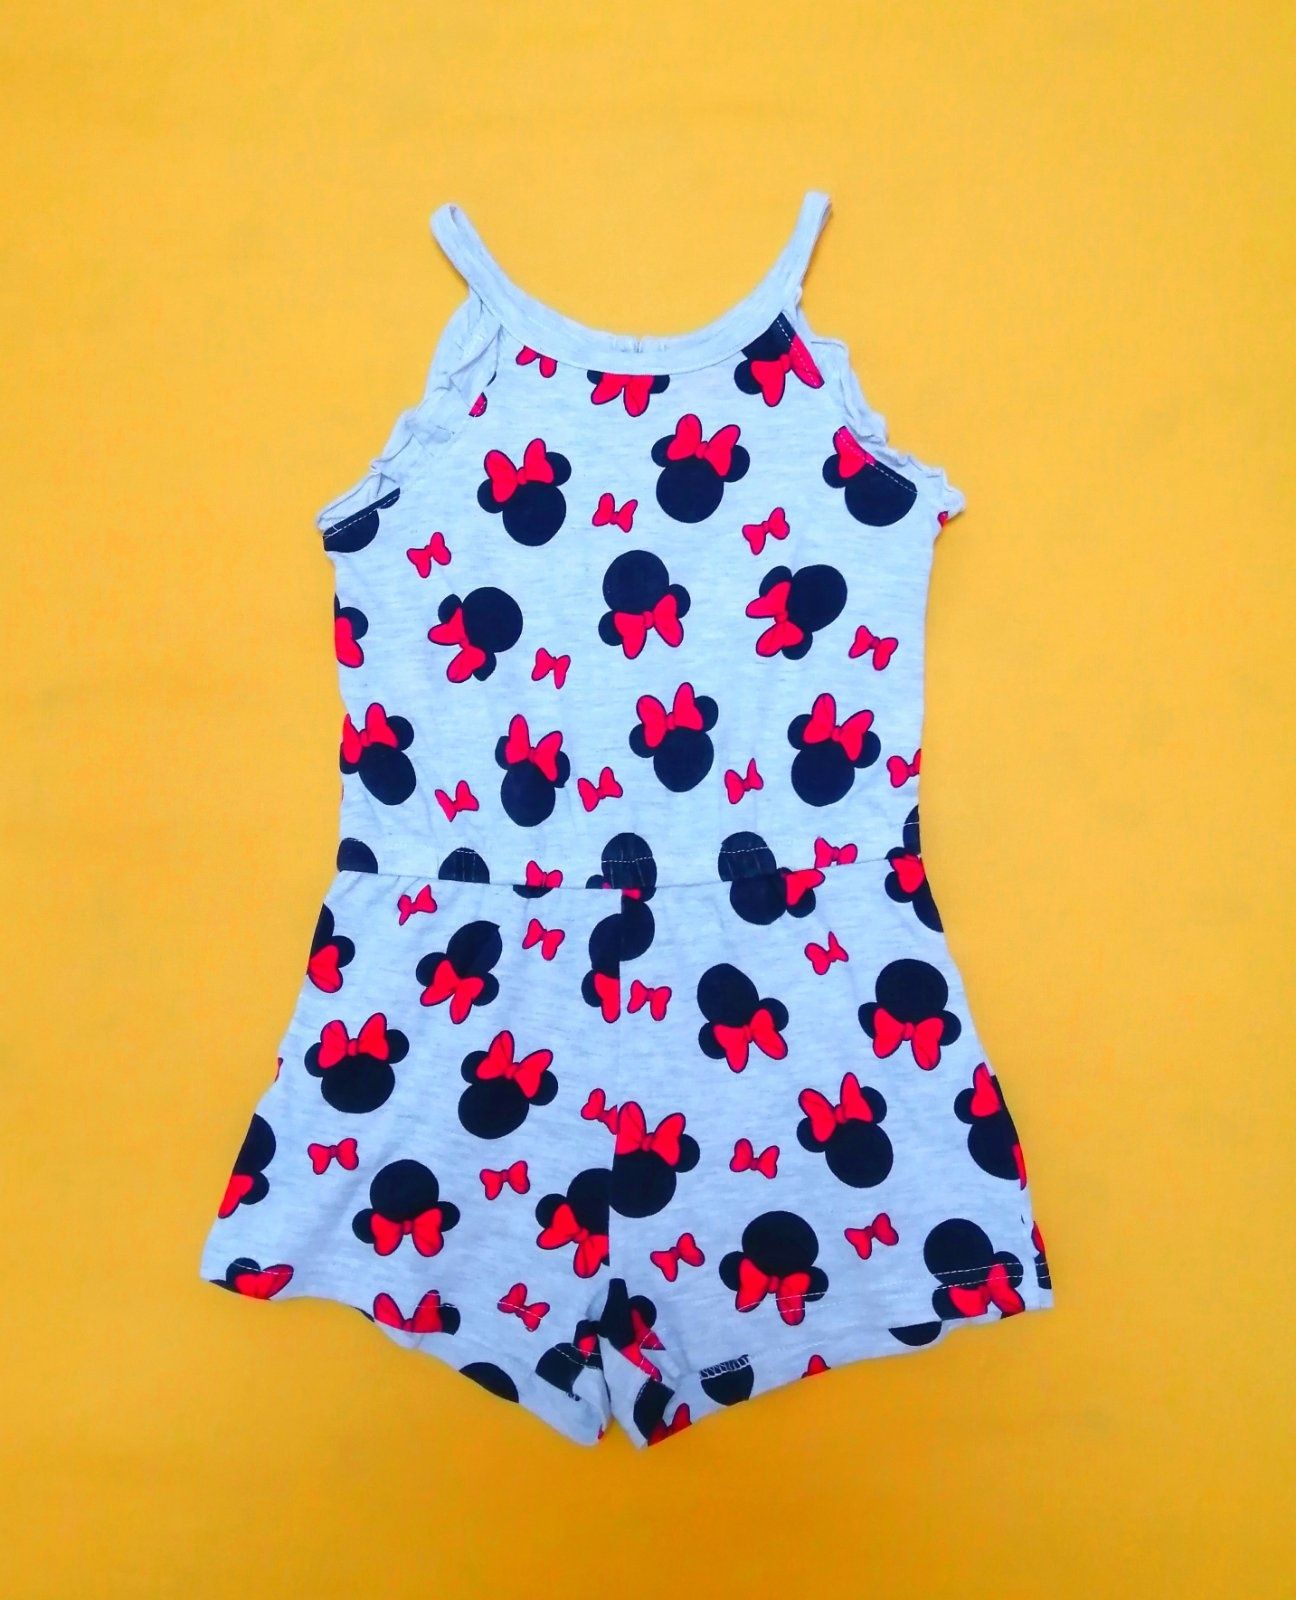 Набор одежды для девочки 3-4 года (рост 98-104 см). Цена за набор.